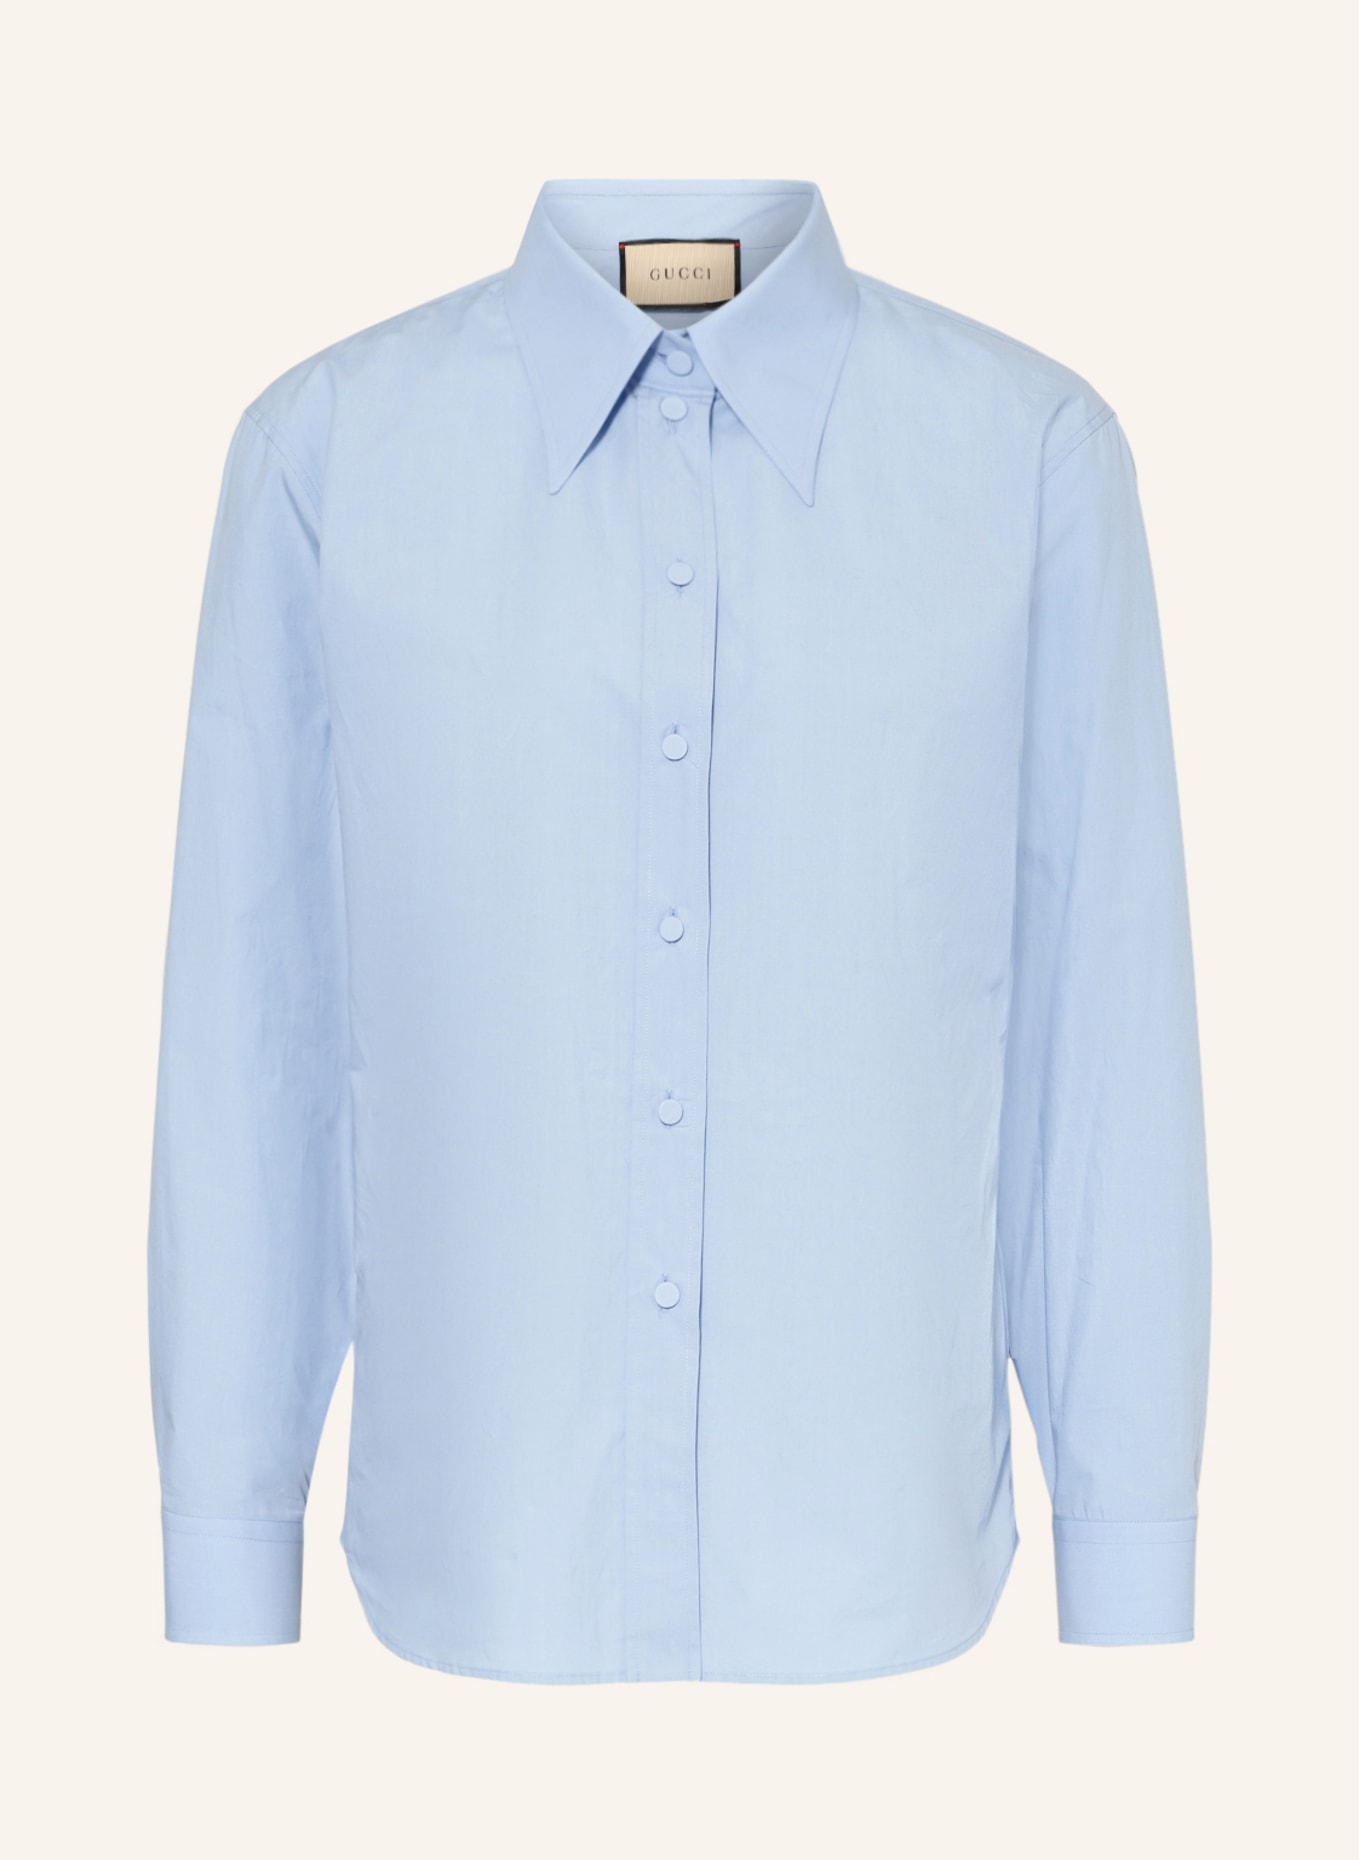 GUCCI Shirt blouse, Color: 4910 SKY BLUE (Image 1)